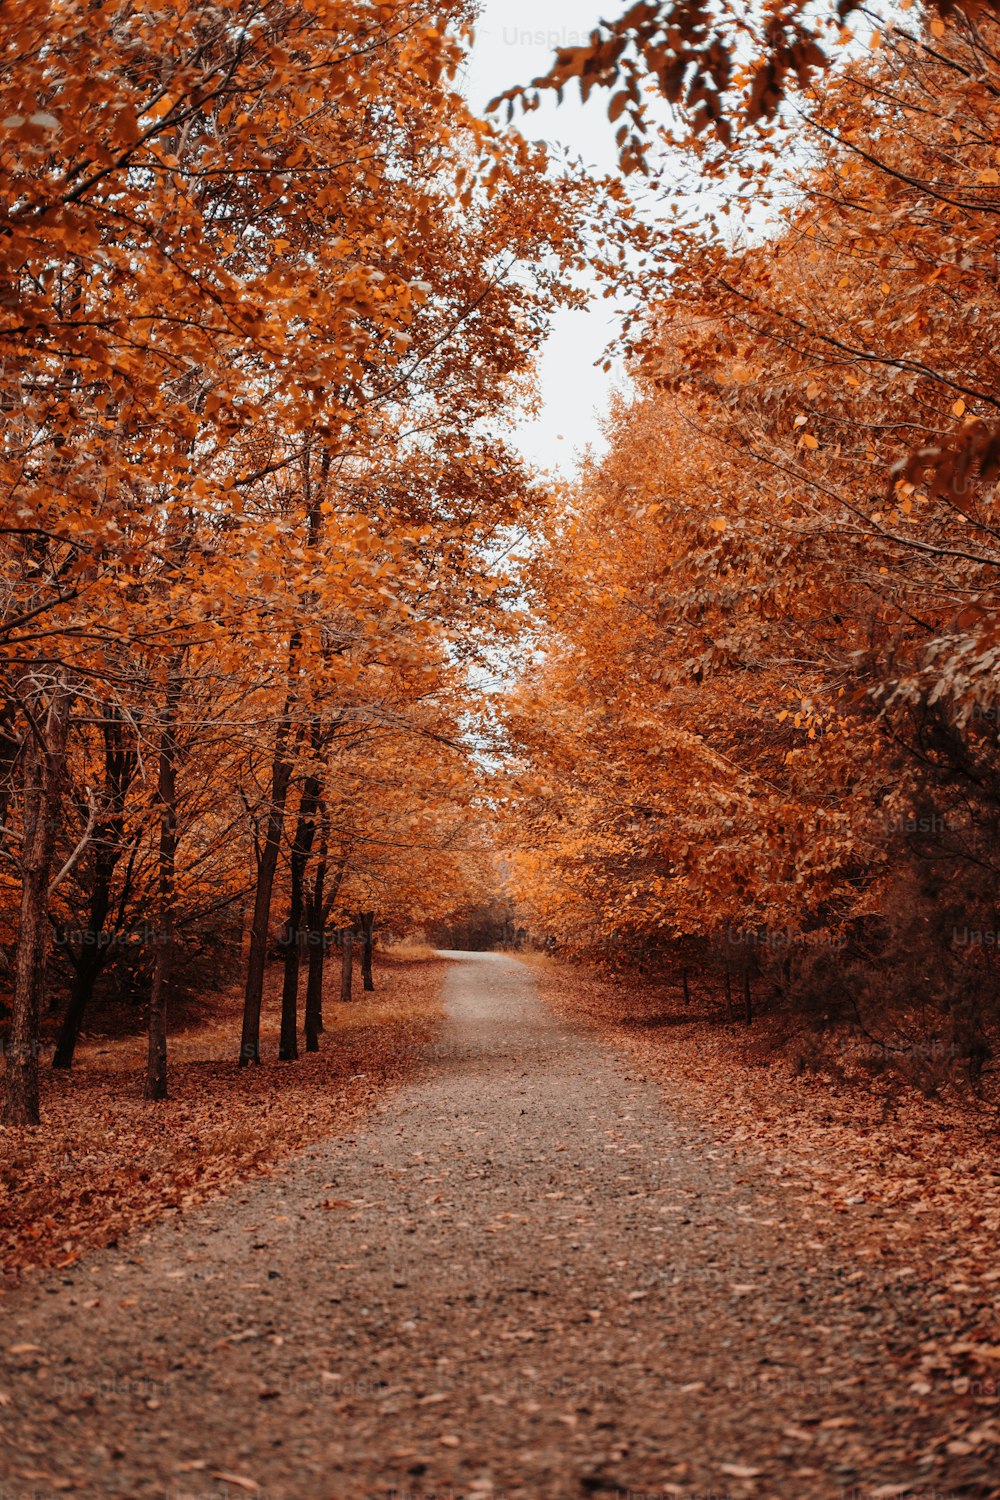 una strada sterrata circondata da alberi con foglie d'arancio